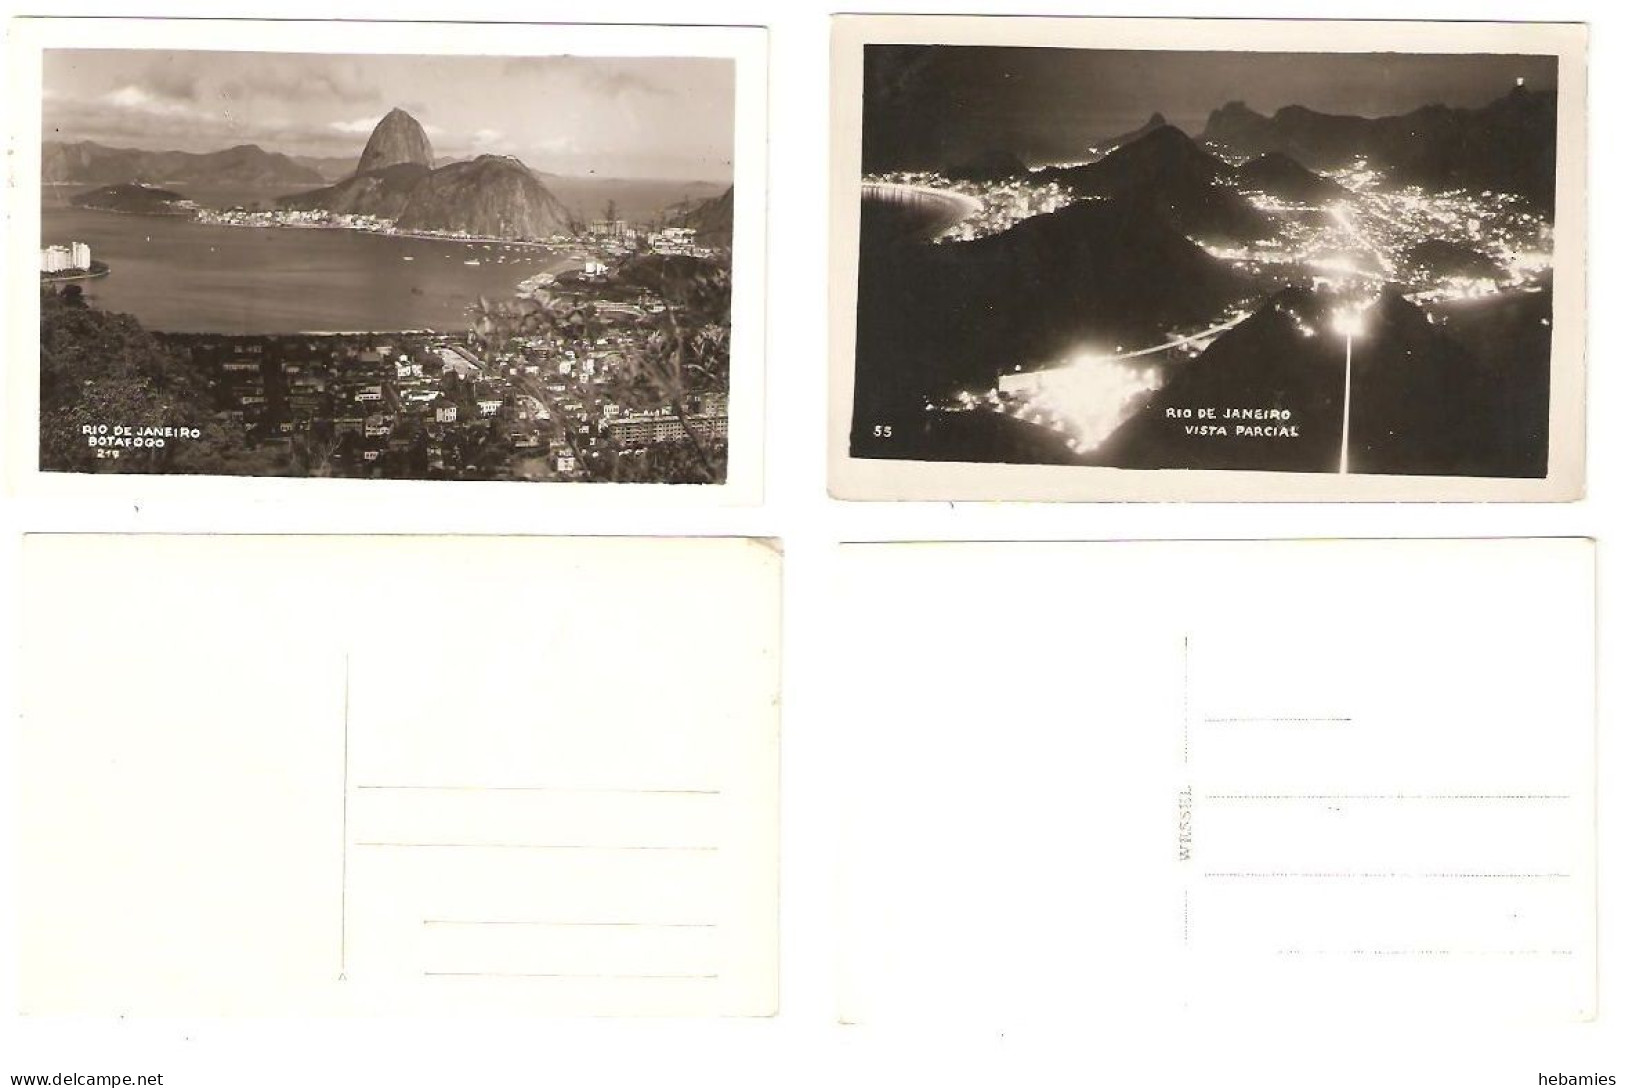 Botafogo & Vista Parcial - RIO DE JANEIRO - 2 Postcards - BRAZIL - - Rio De Janeiro